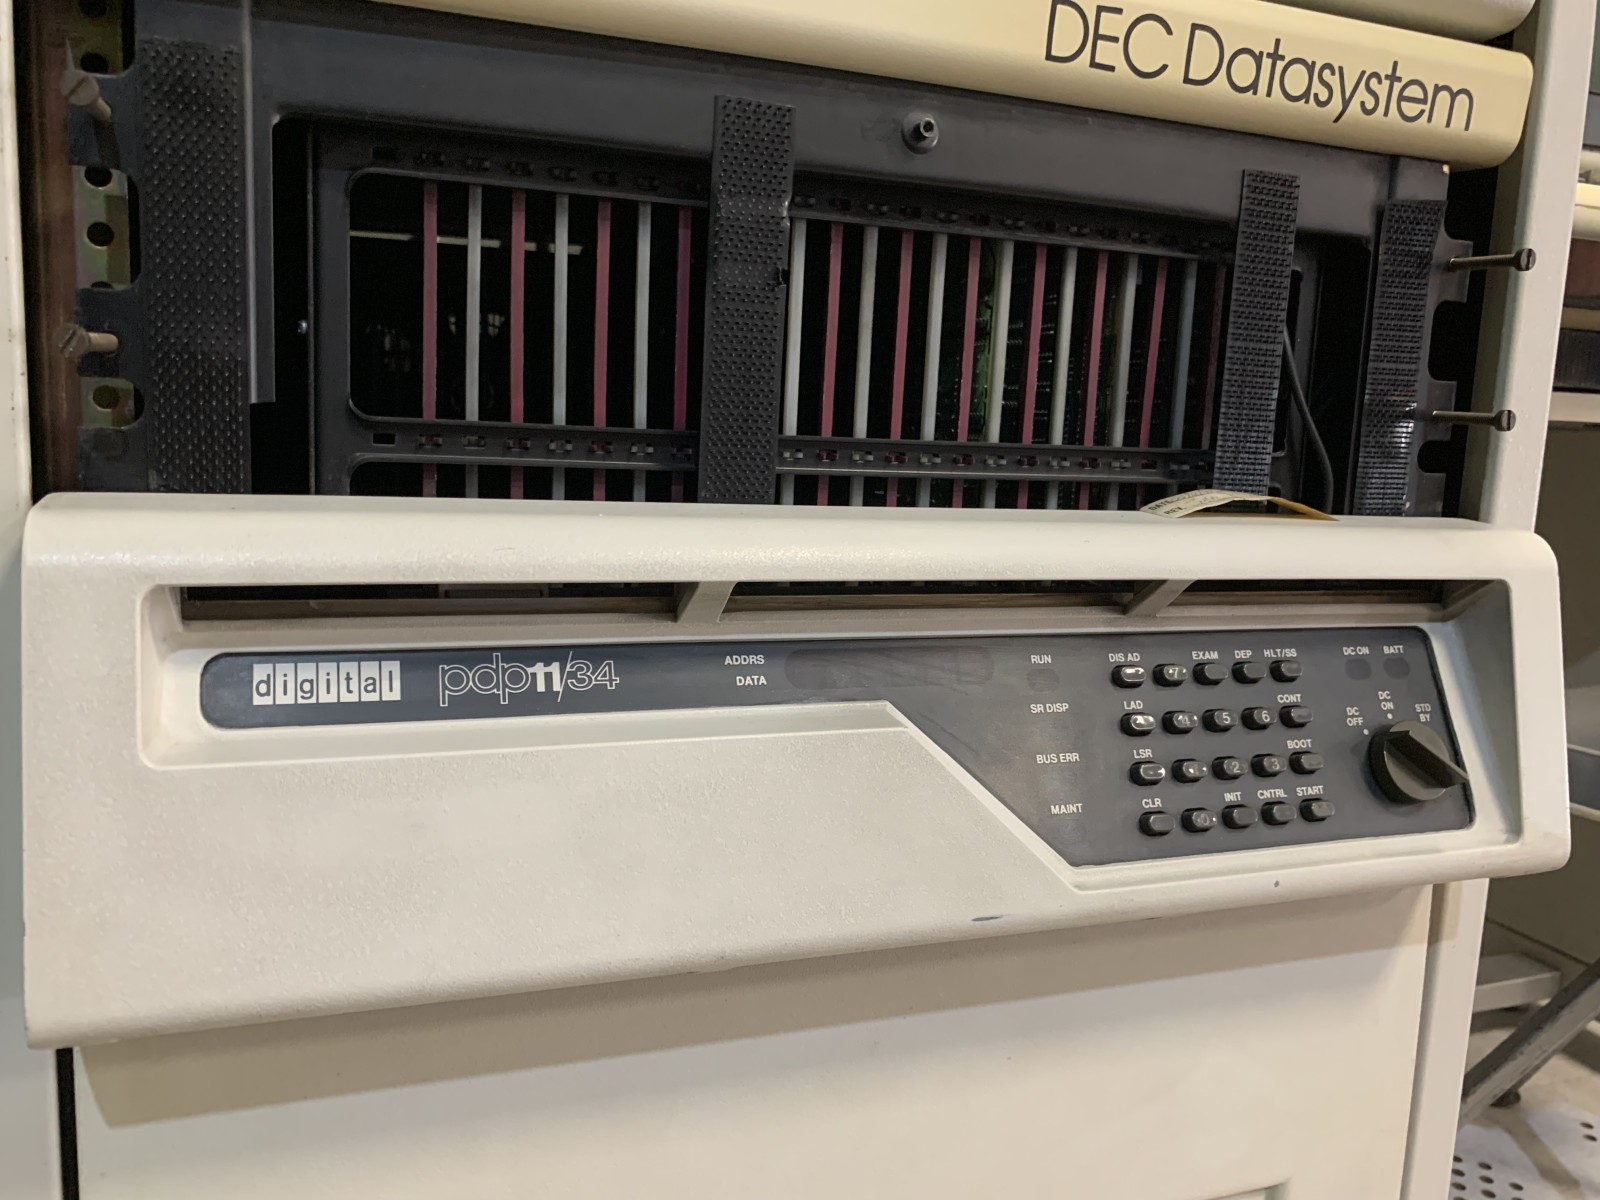 Jednostka centralna PDP 11/34